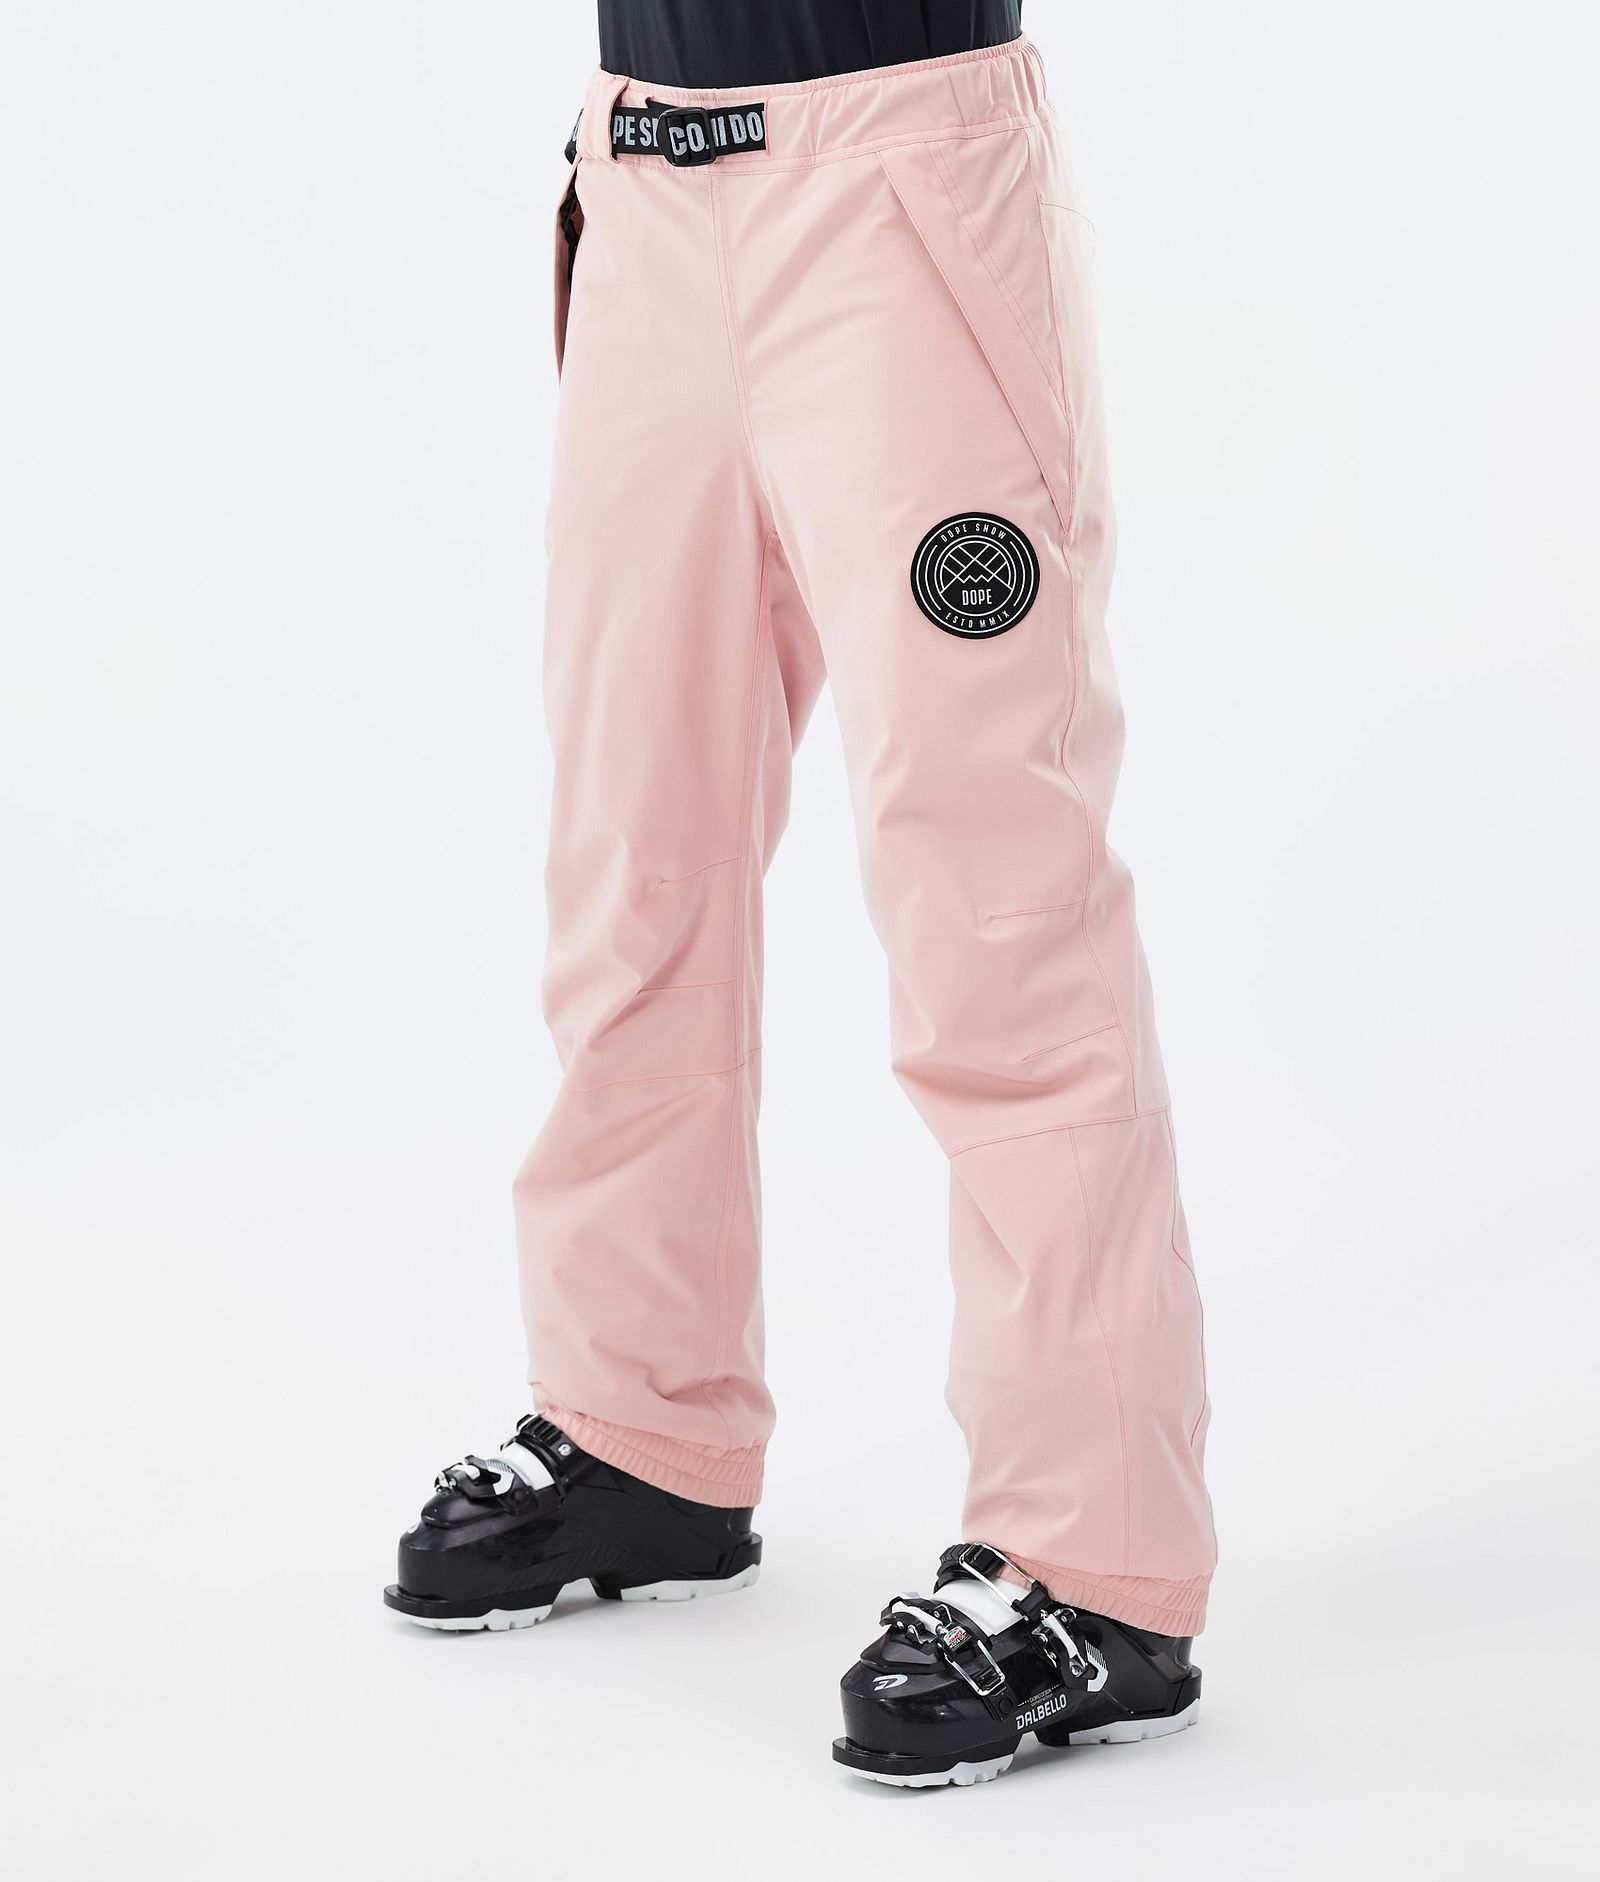 Blizzard W Pantalon de Ski Femme Soft Pink, Image 1 sur 5